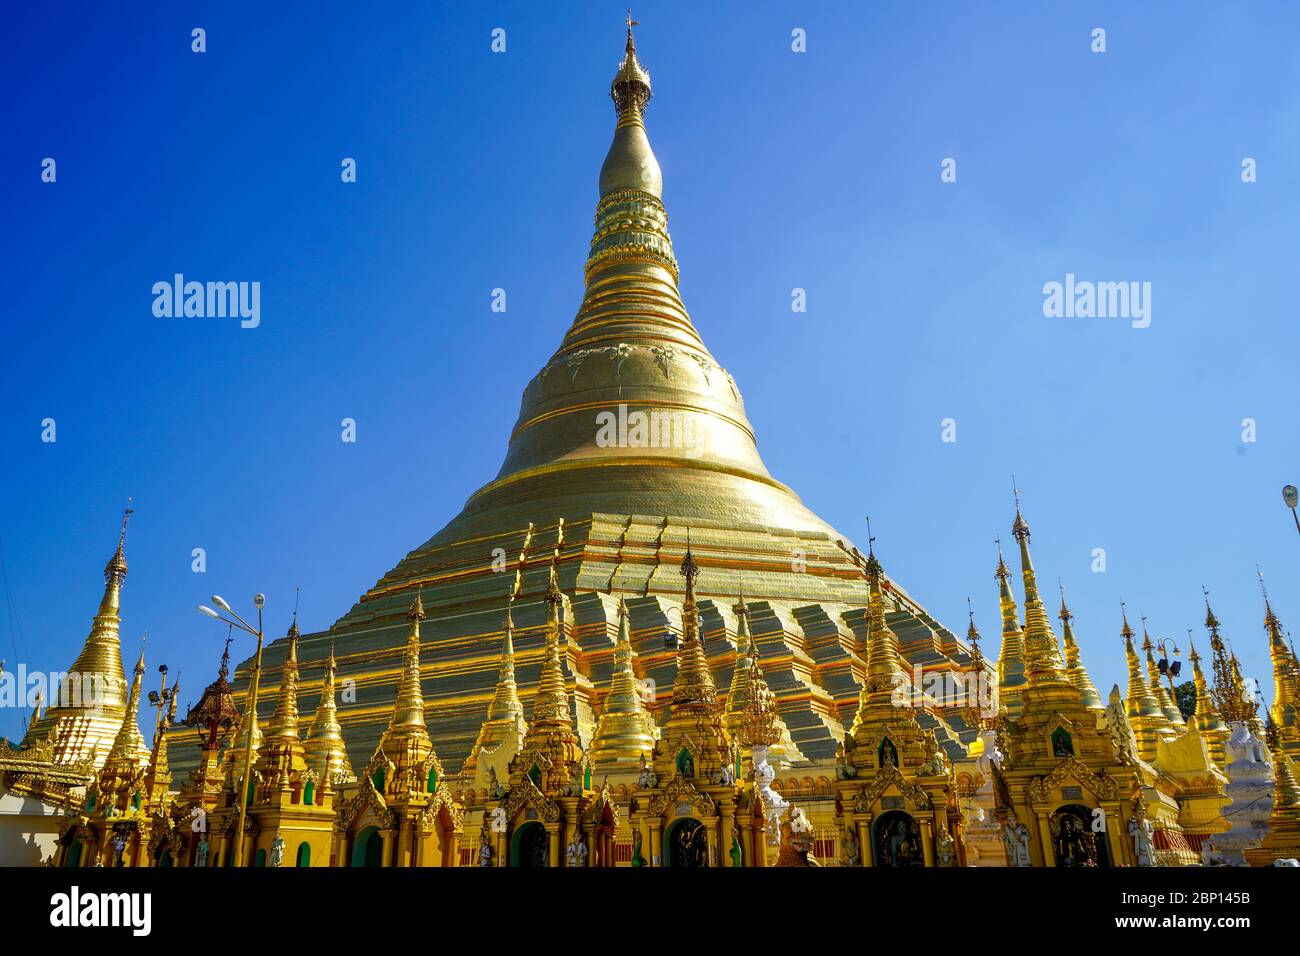 La Pagode Shwedagon, également connue sous le nom de Grand Dagon ou Pagode d'Or à Yangon, au Myanmar. Décembre 2019 Banque D'Images